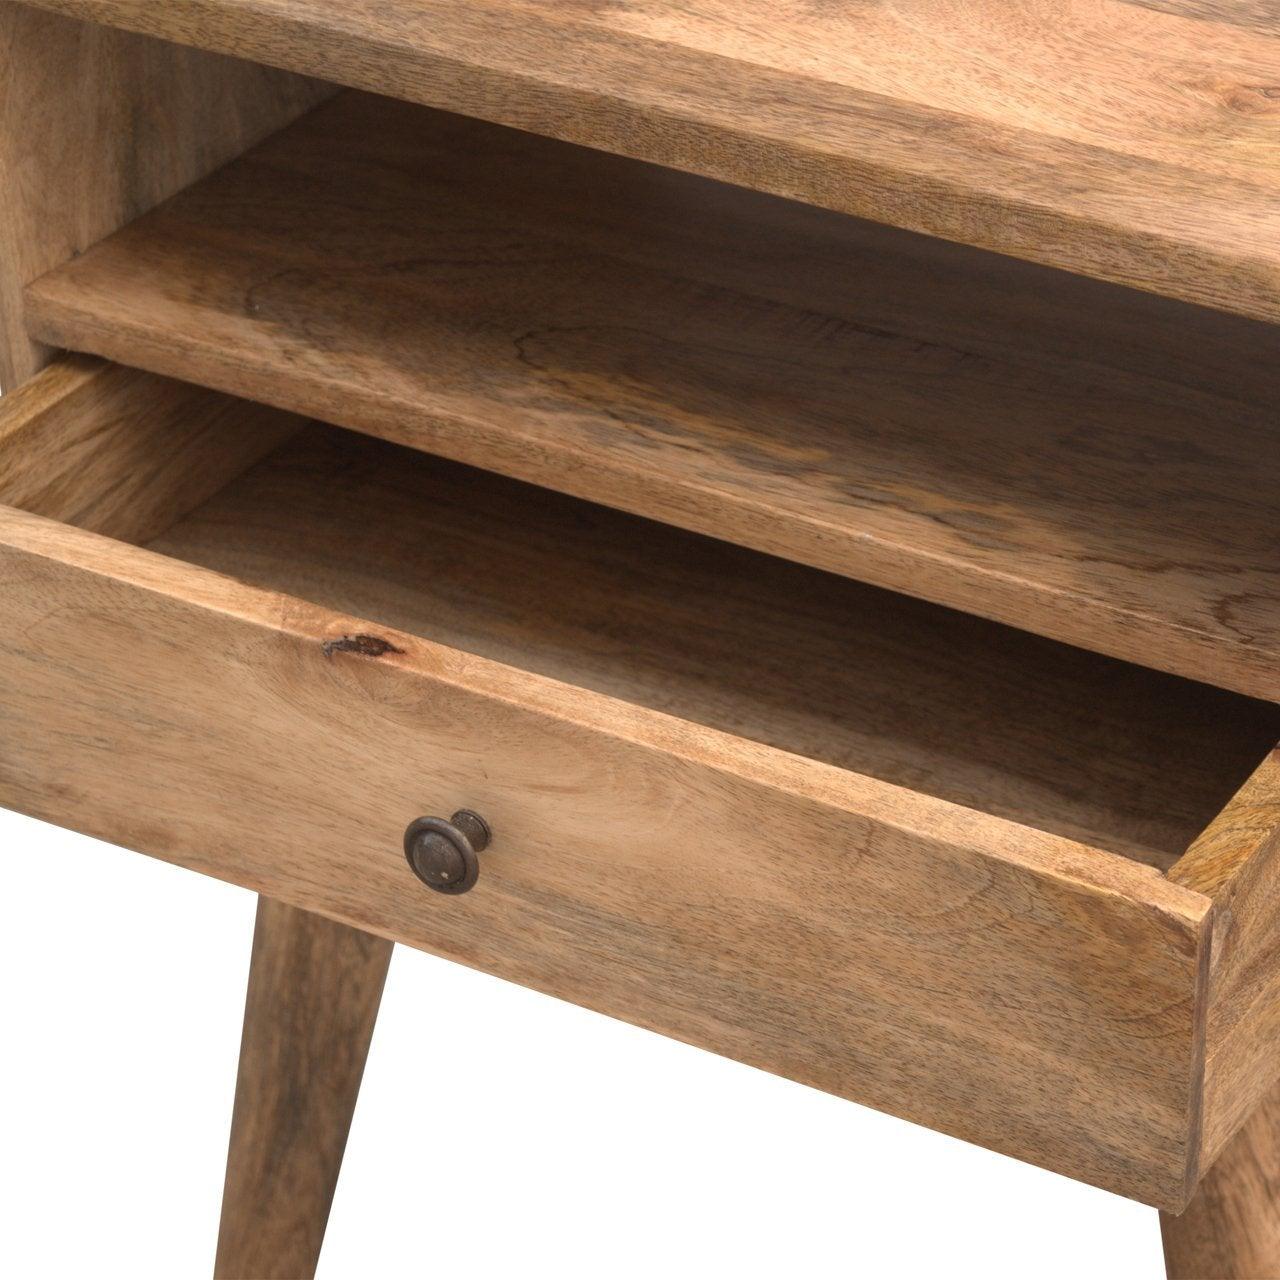 Modern solid wood bedside table with open slot - crimblefest furniture - image 6